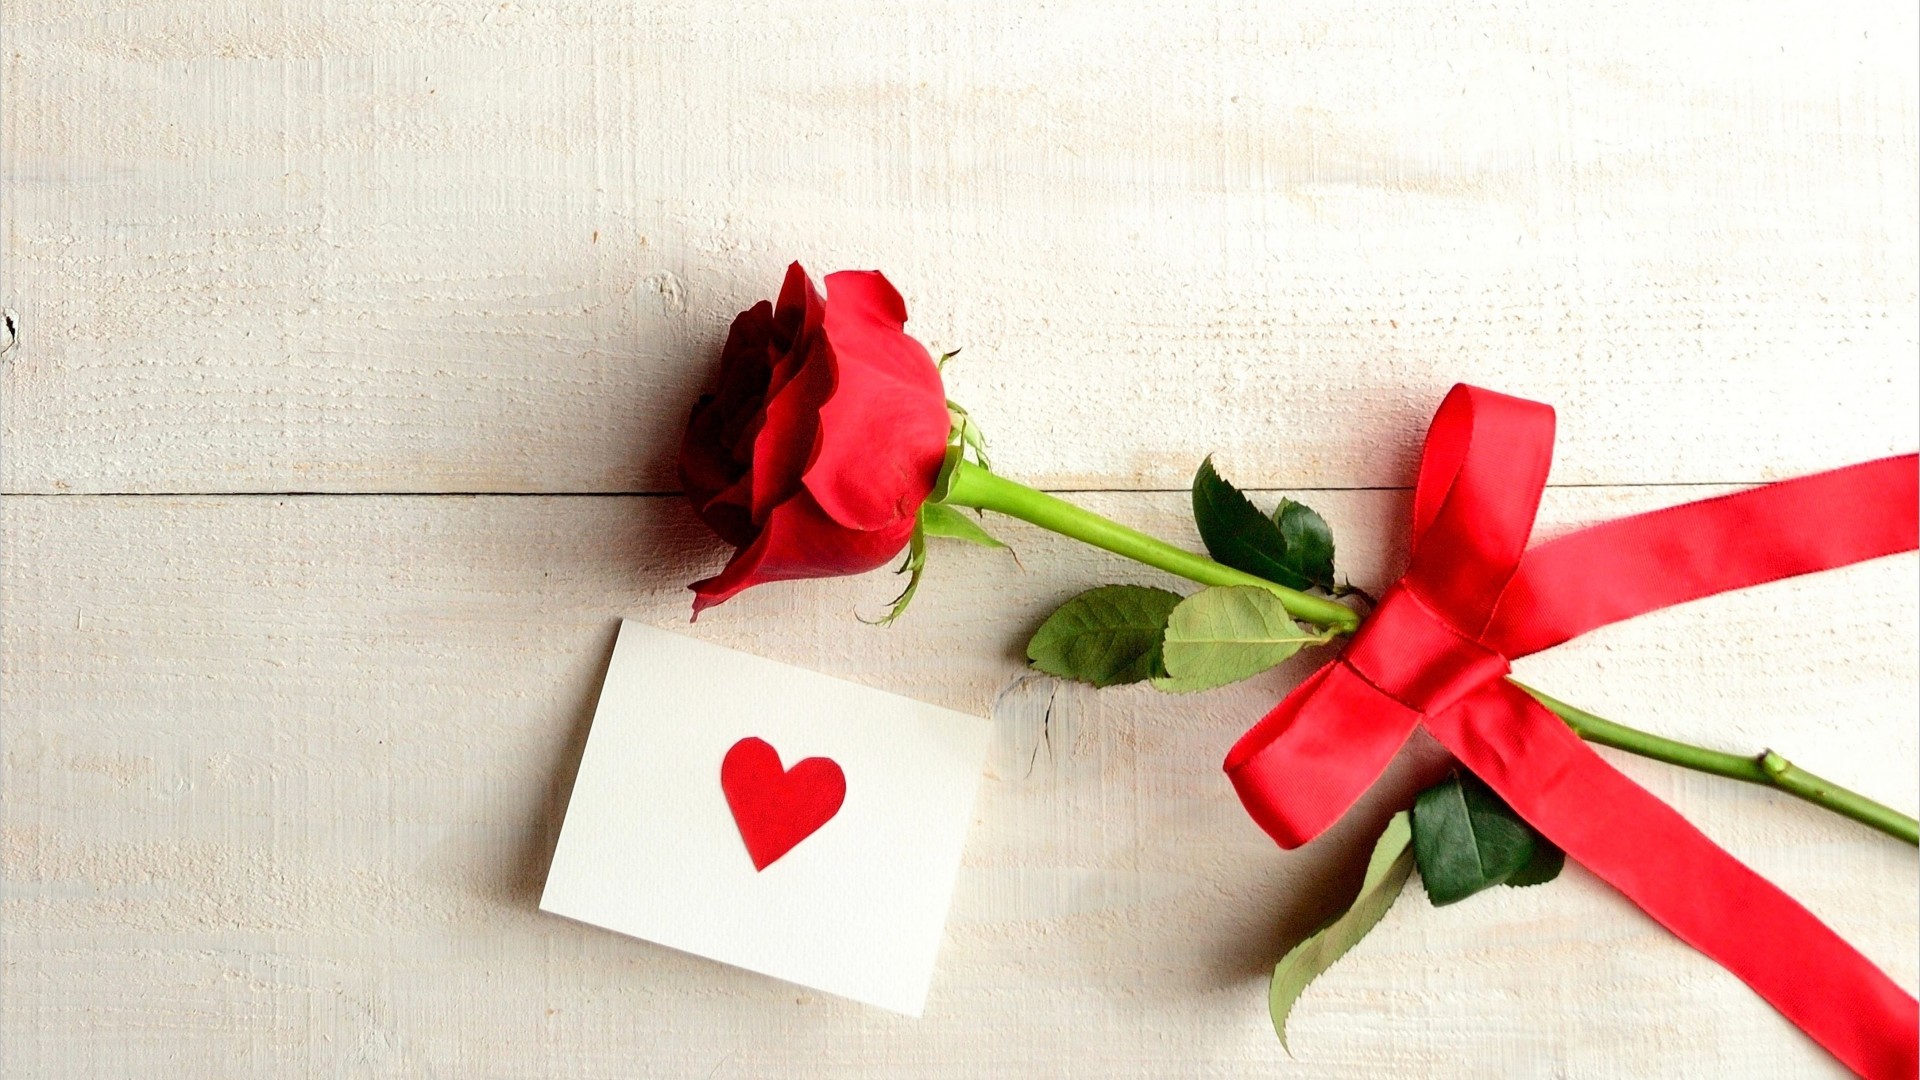 唯美红色玫瑰爱情图片